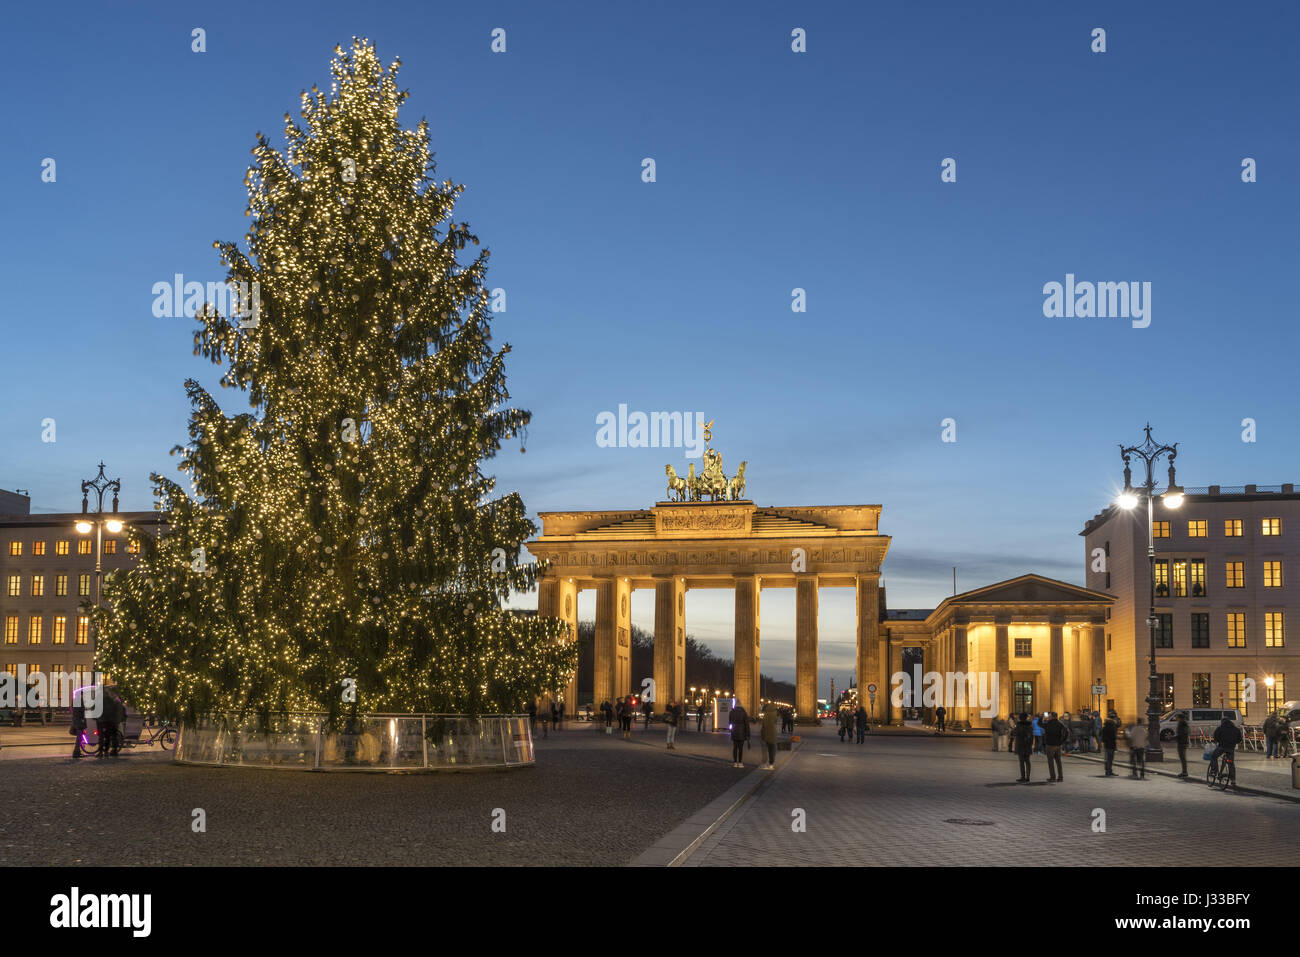 Weihnachtsbaum am Pariser Platz und Brandenburger Tor, Berlin Deutschland Stockfoto